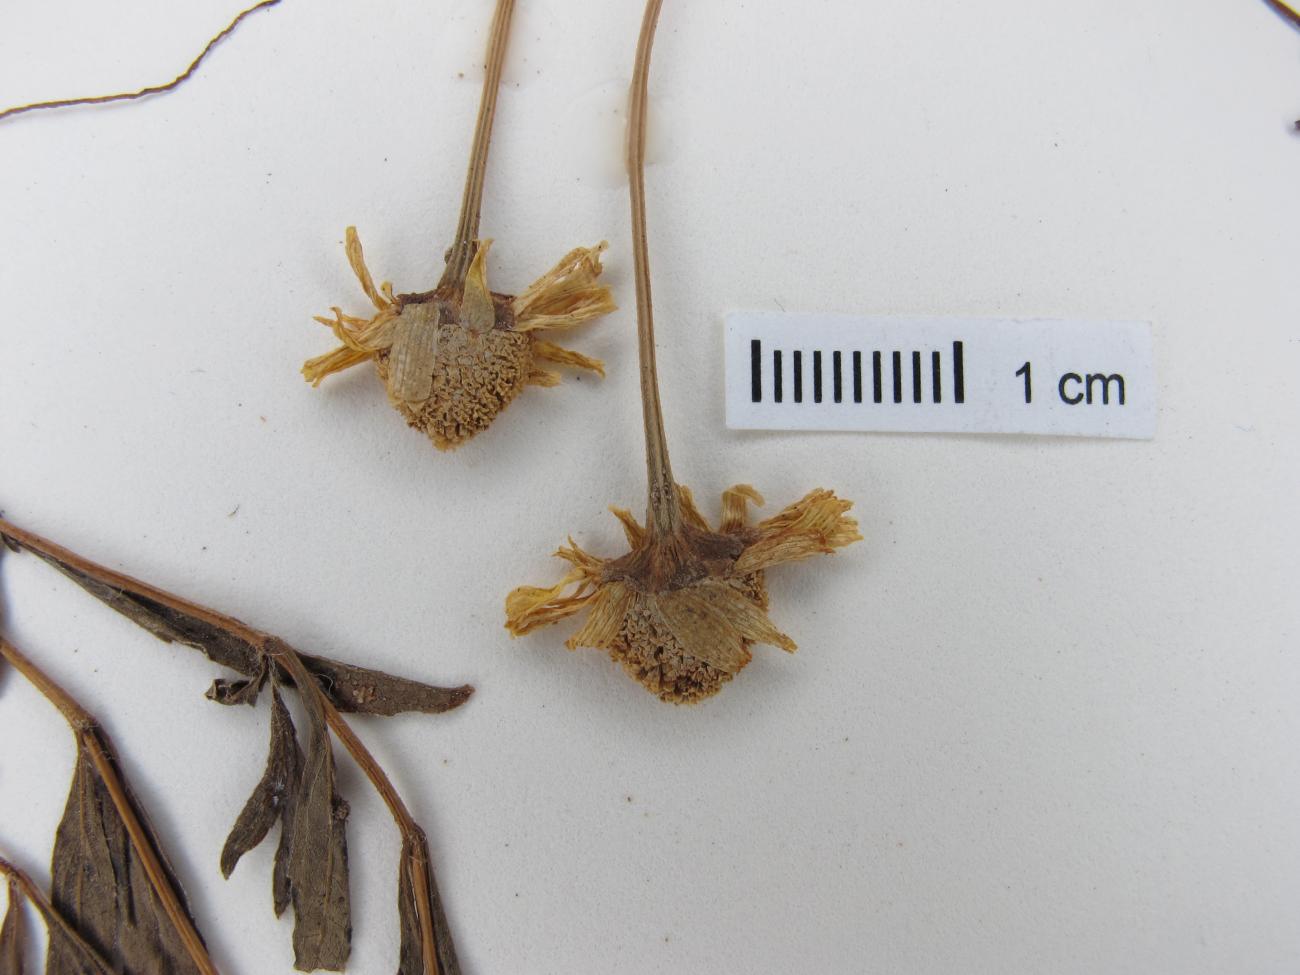 Acmella leptophylla image